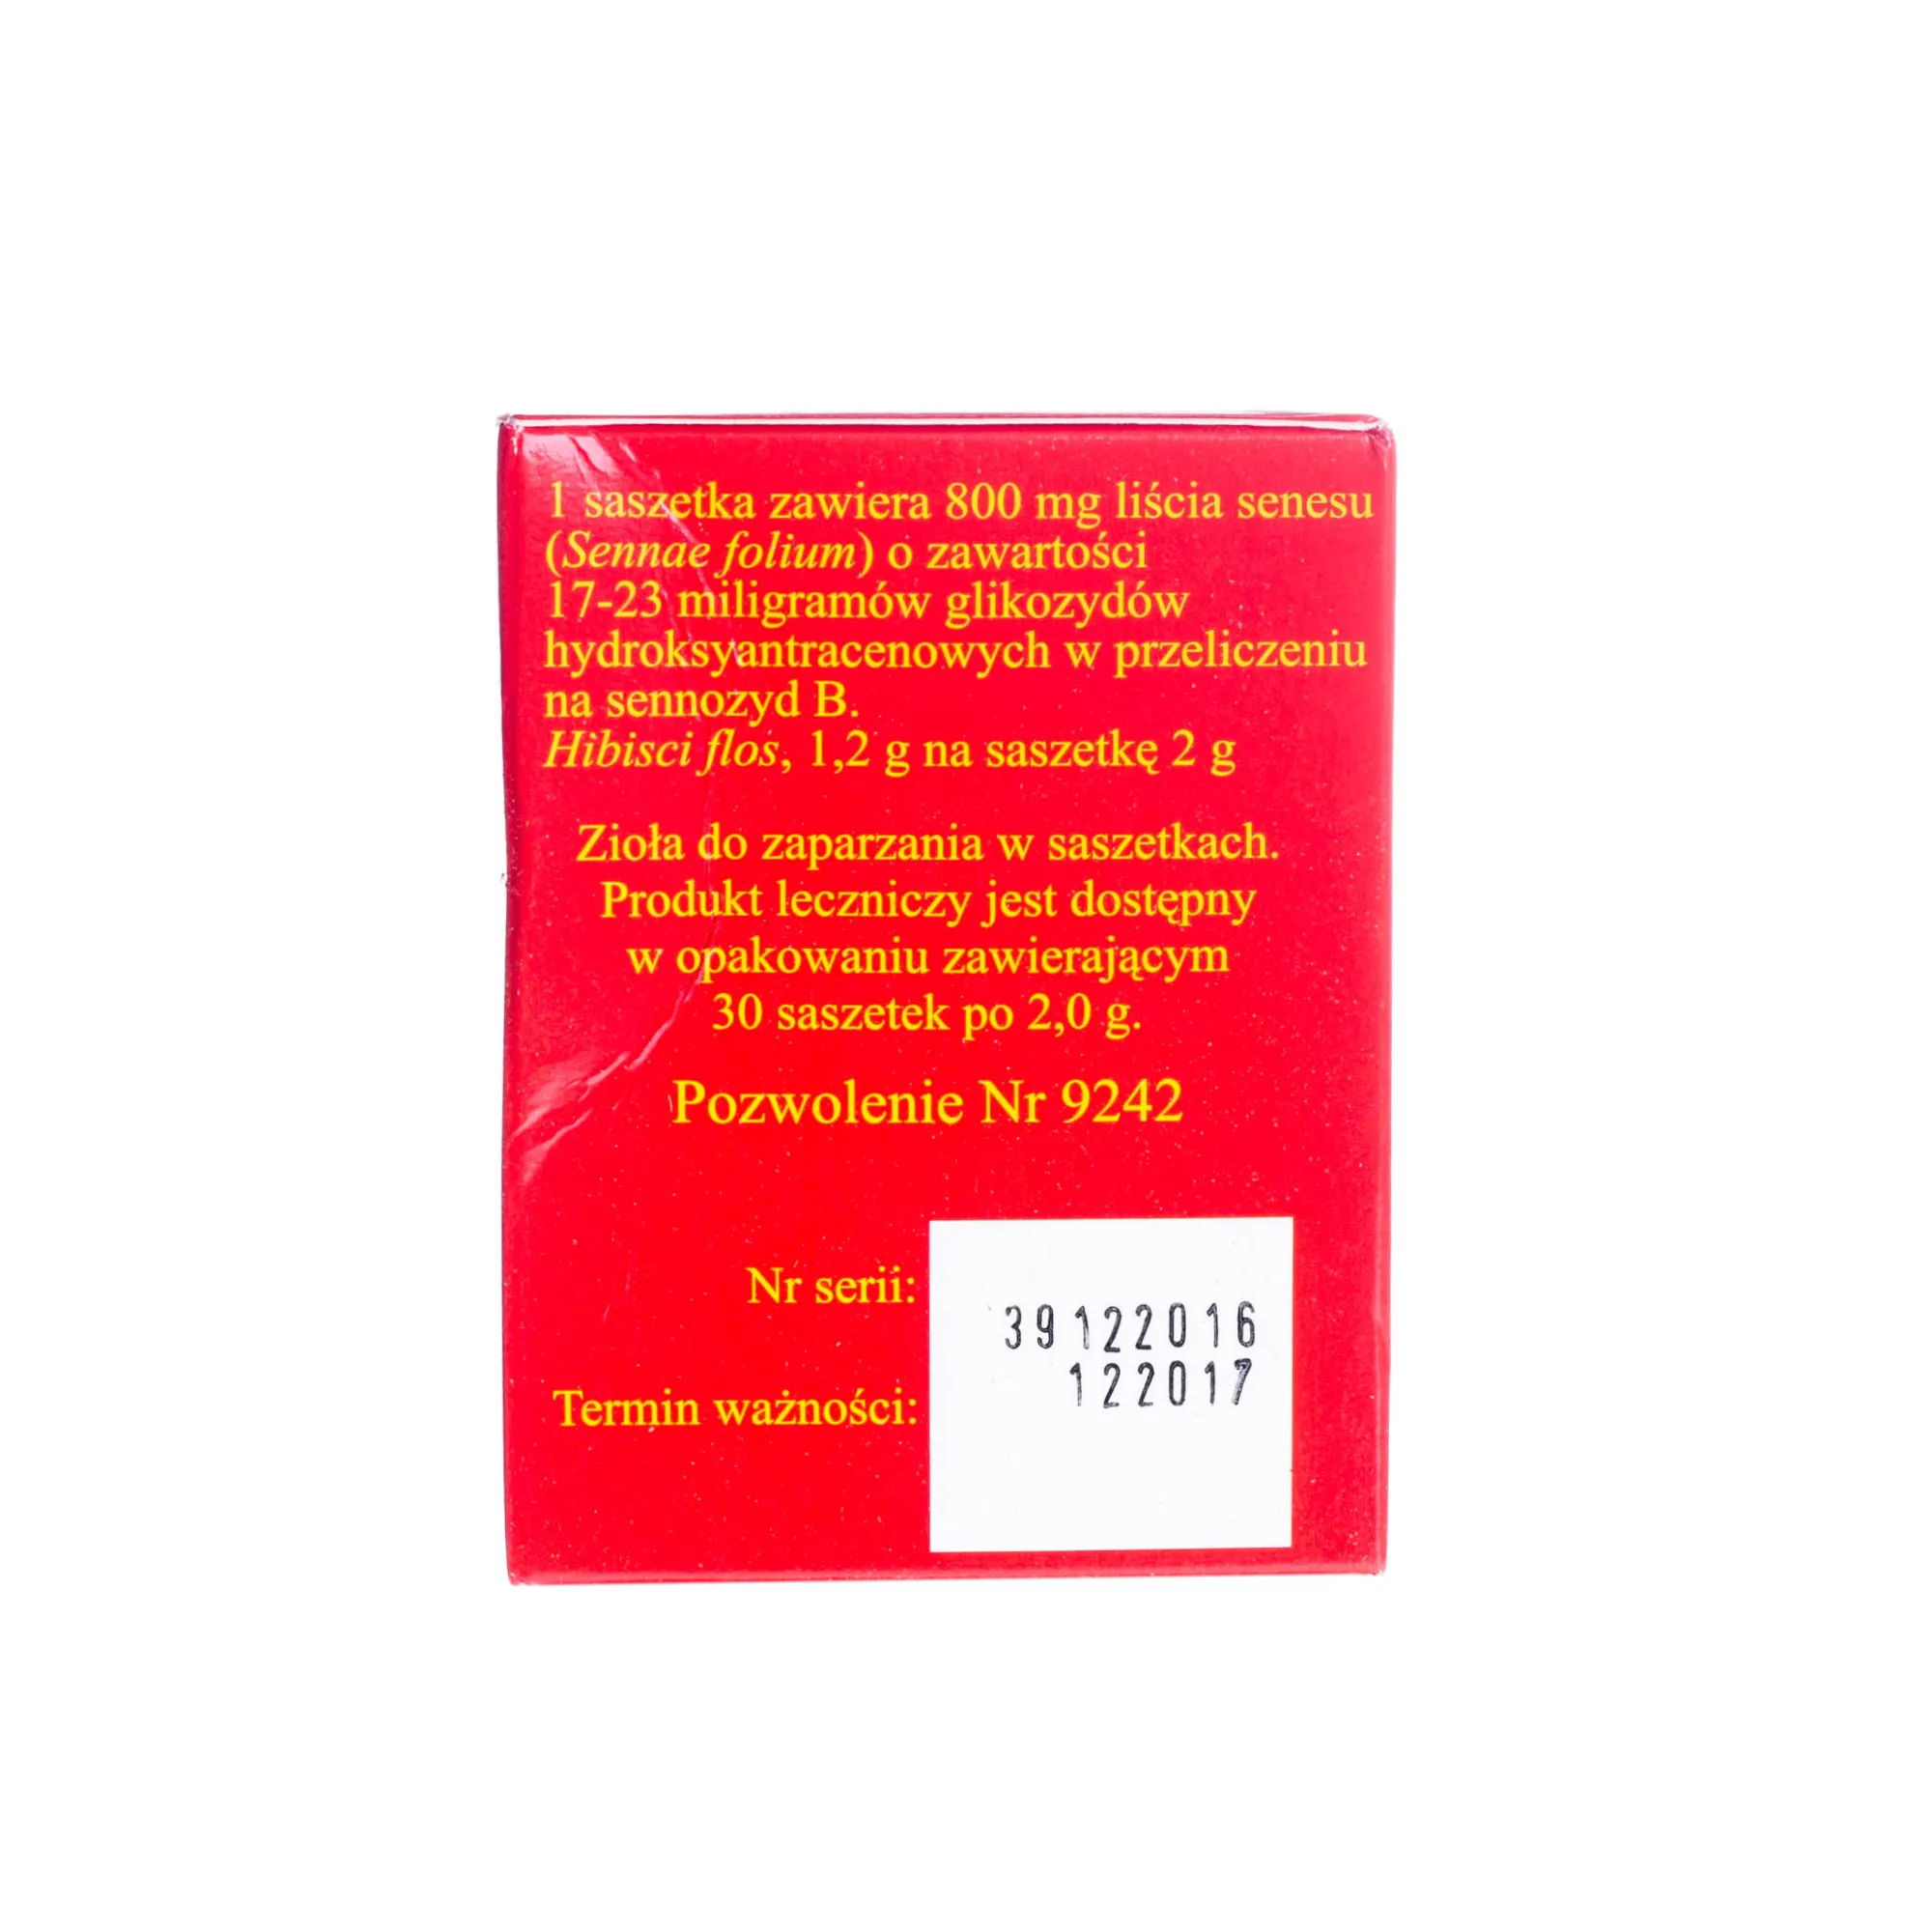 Red Senes Tea - zioła do zaparzania w saszetkach, 30 szt. x 2 g 